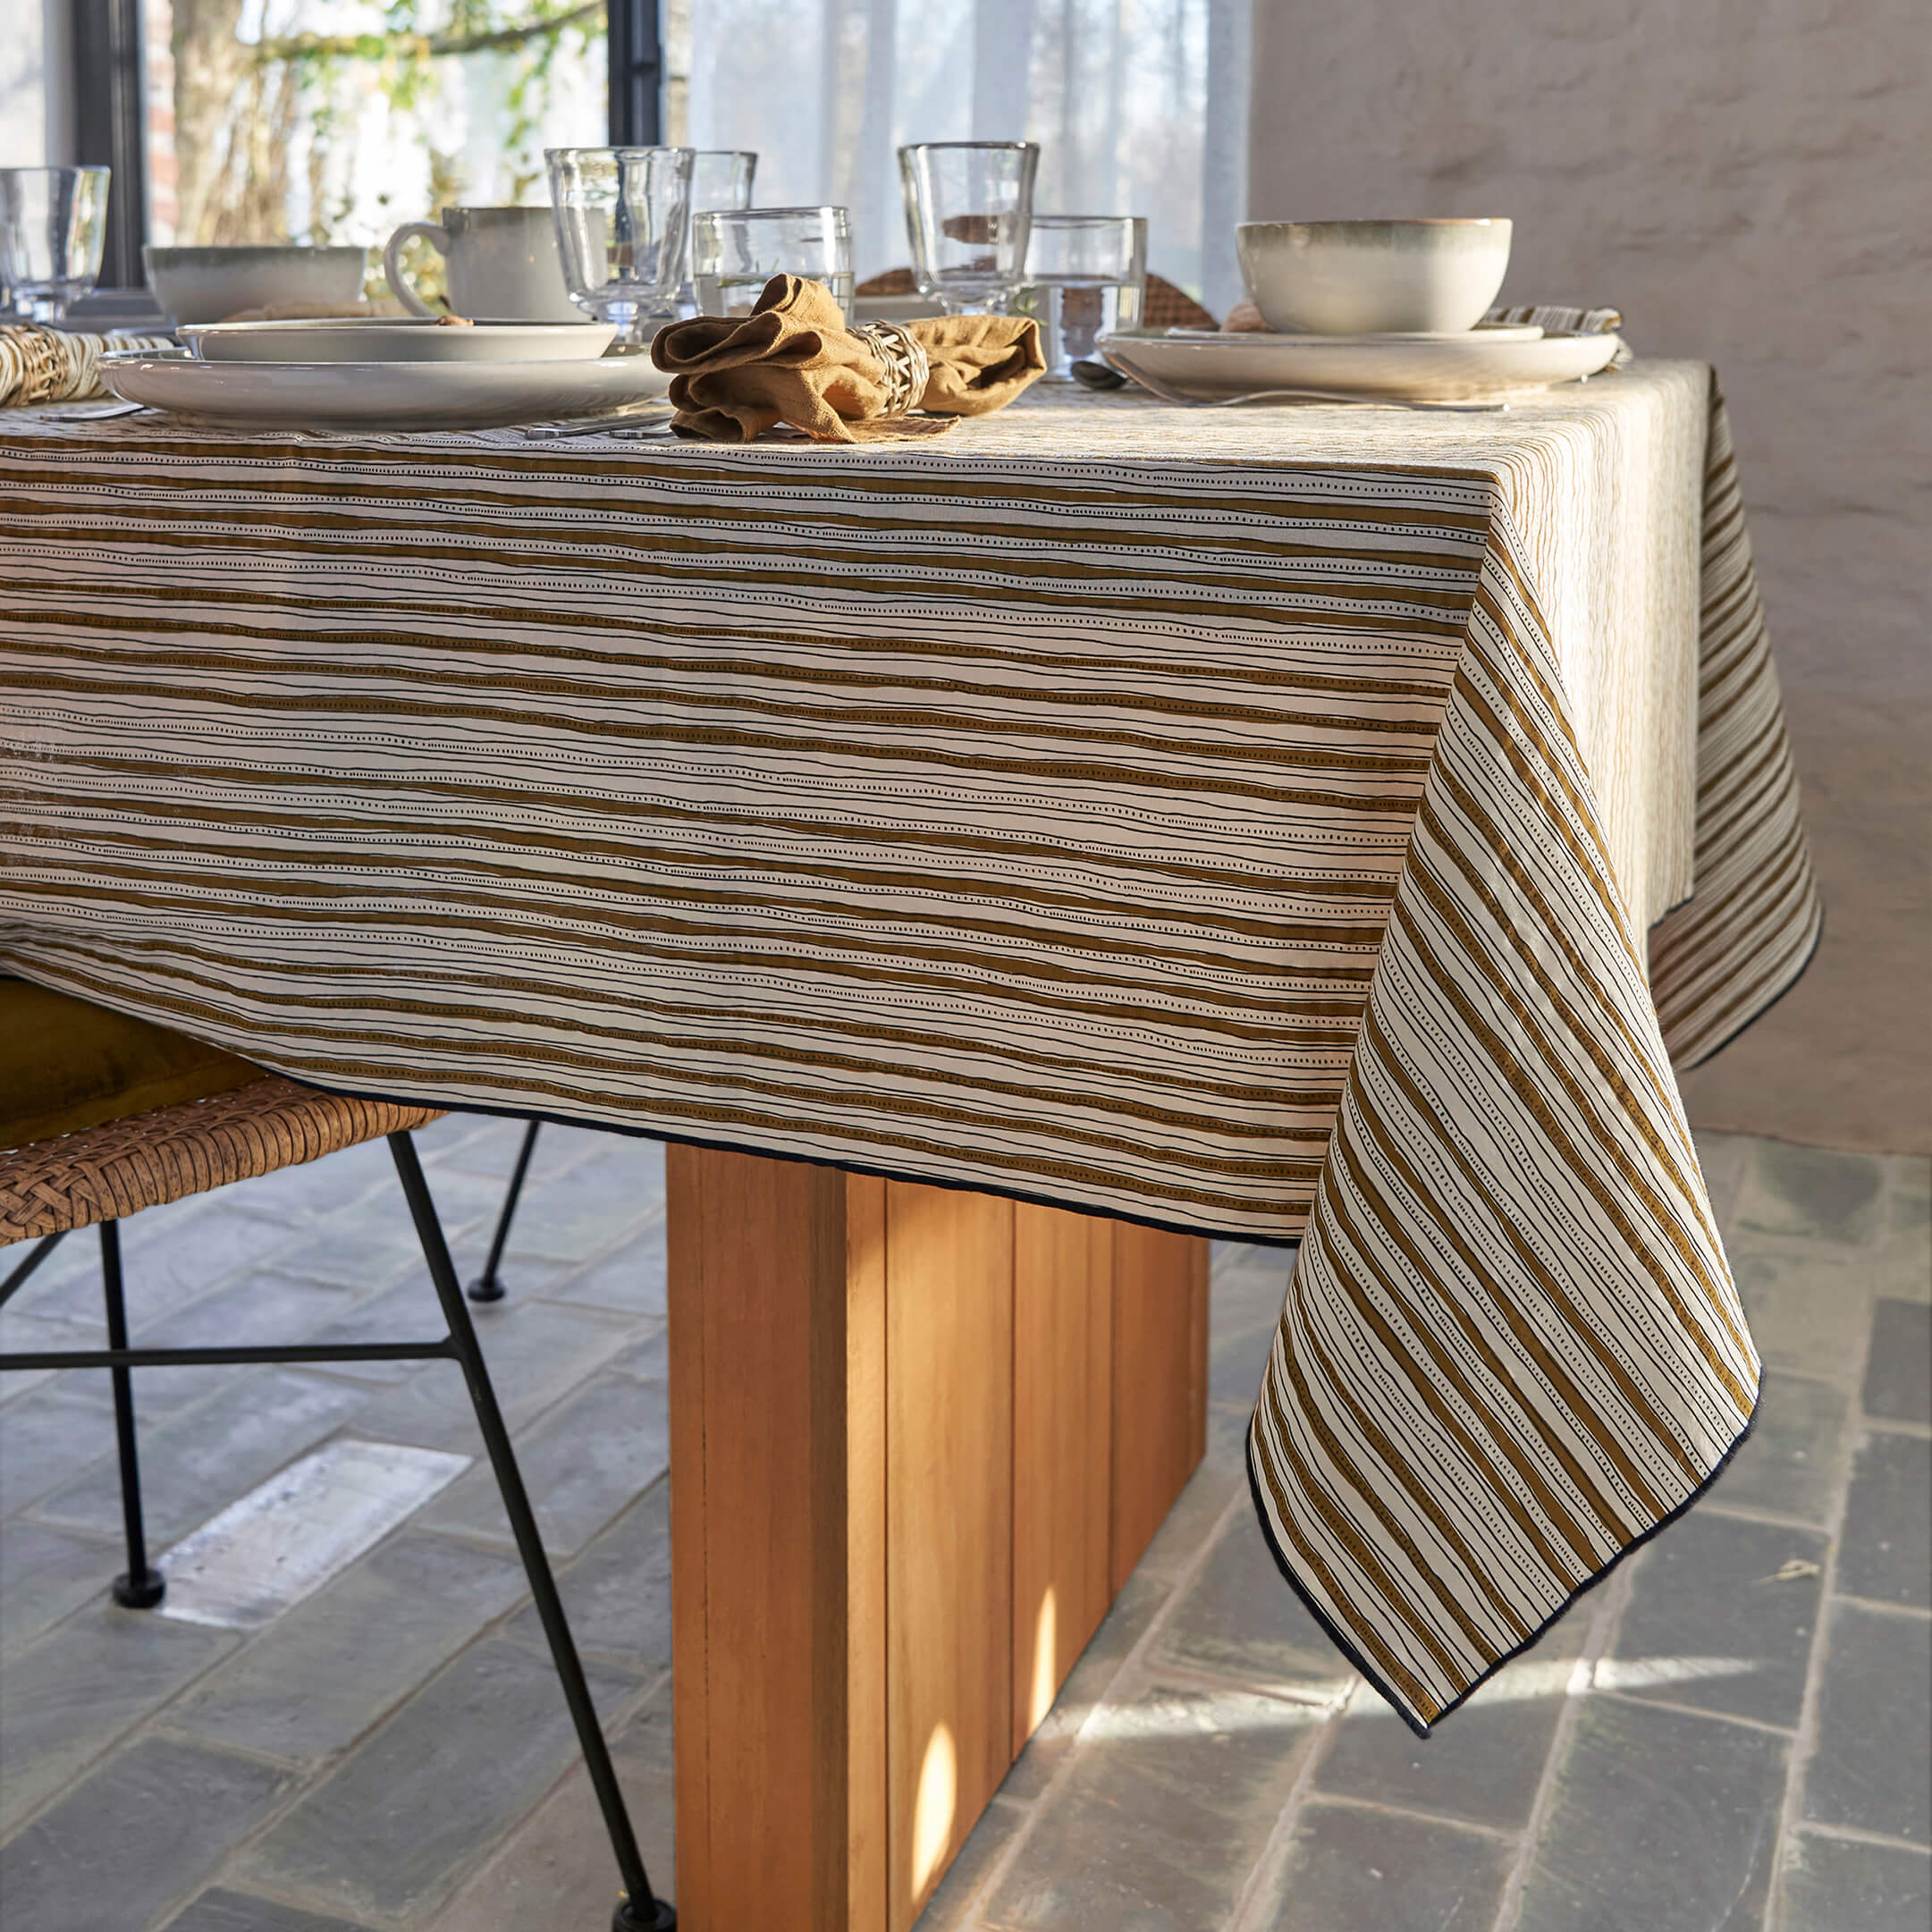 table-cloth-on-walu-eucalyptus-garden-table.jpg